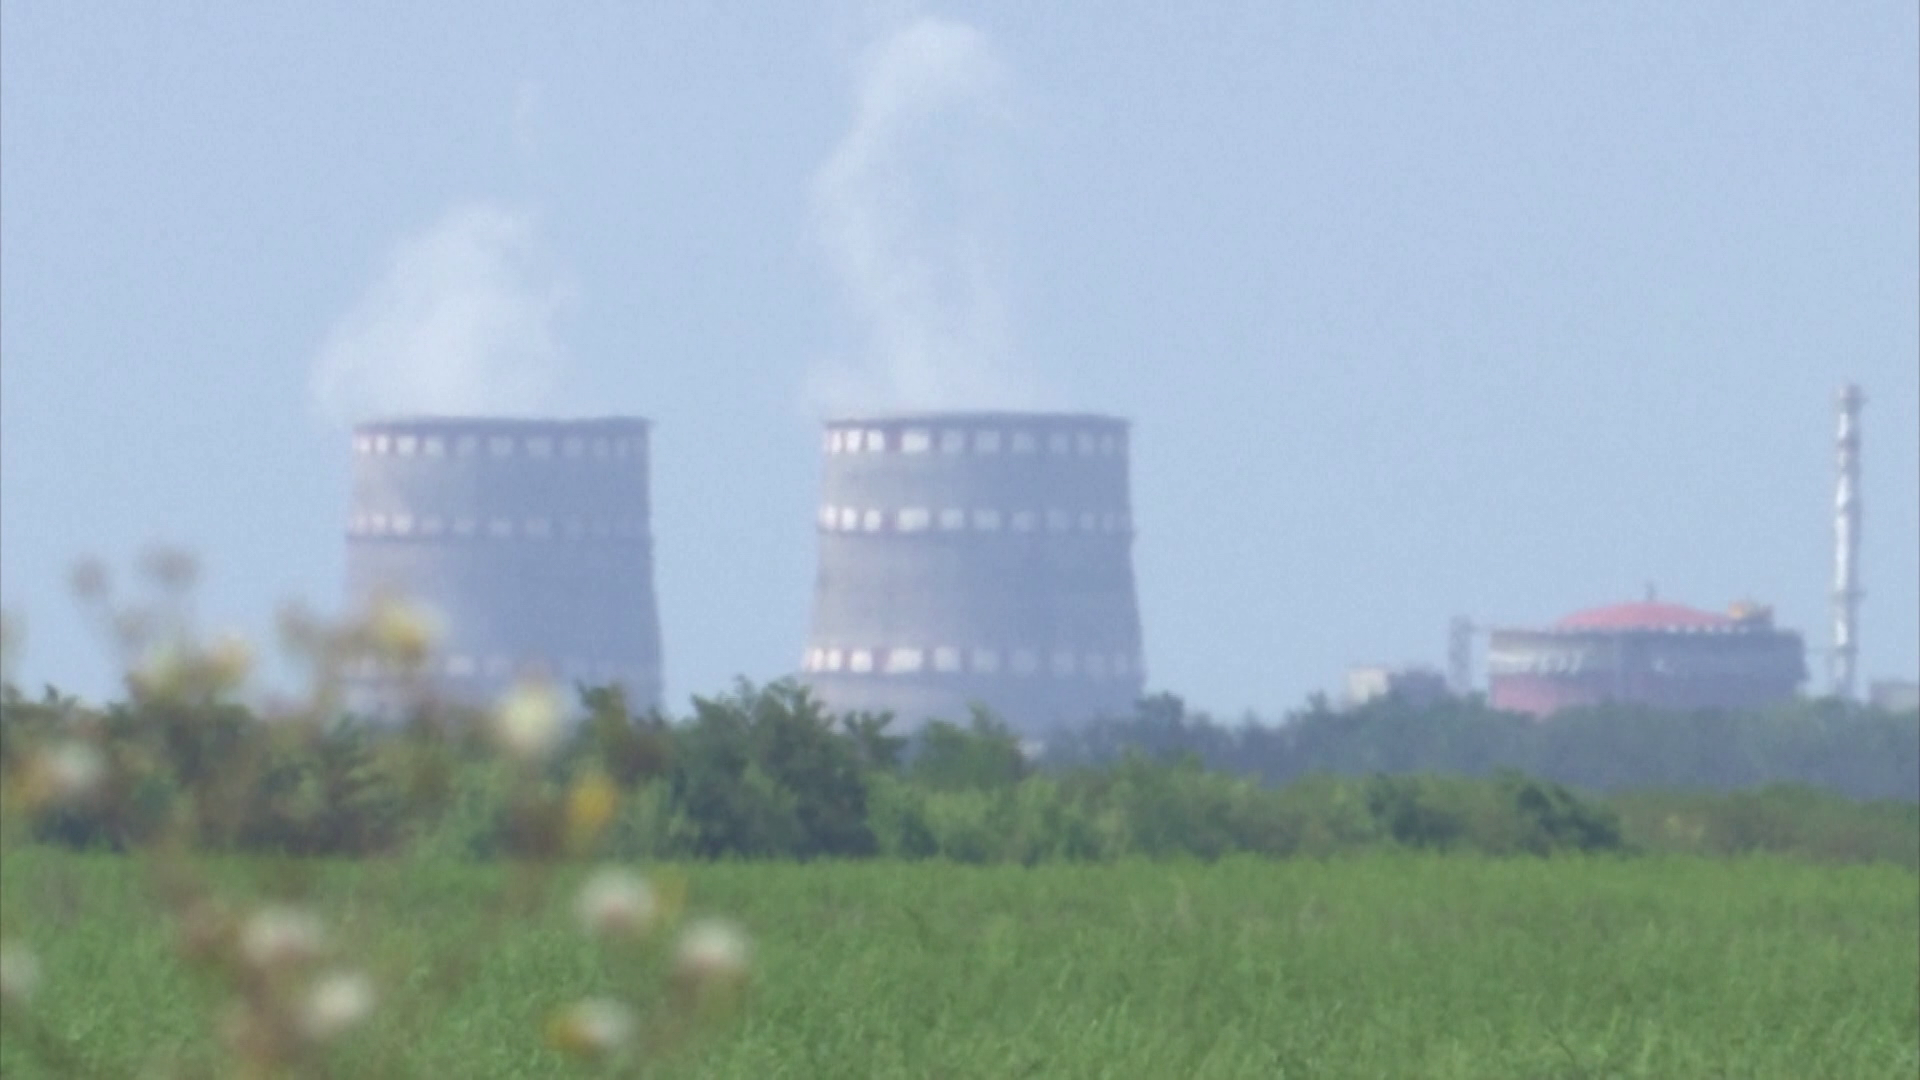 Vitáznak a zaporizzsjai erőművet ért támadásról